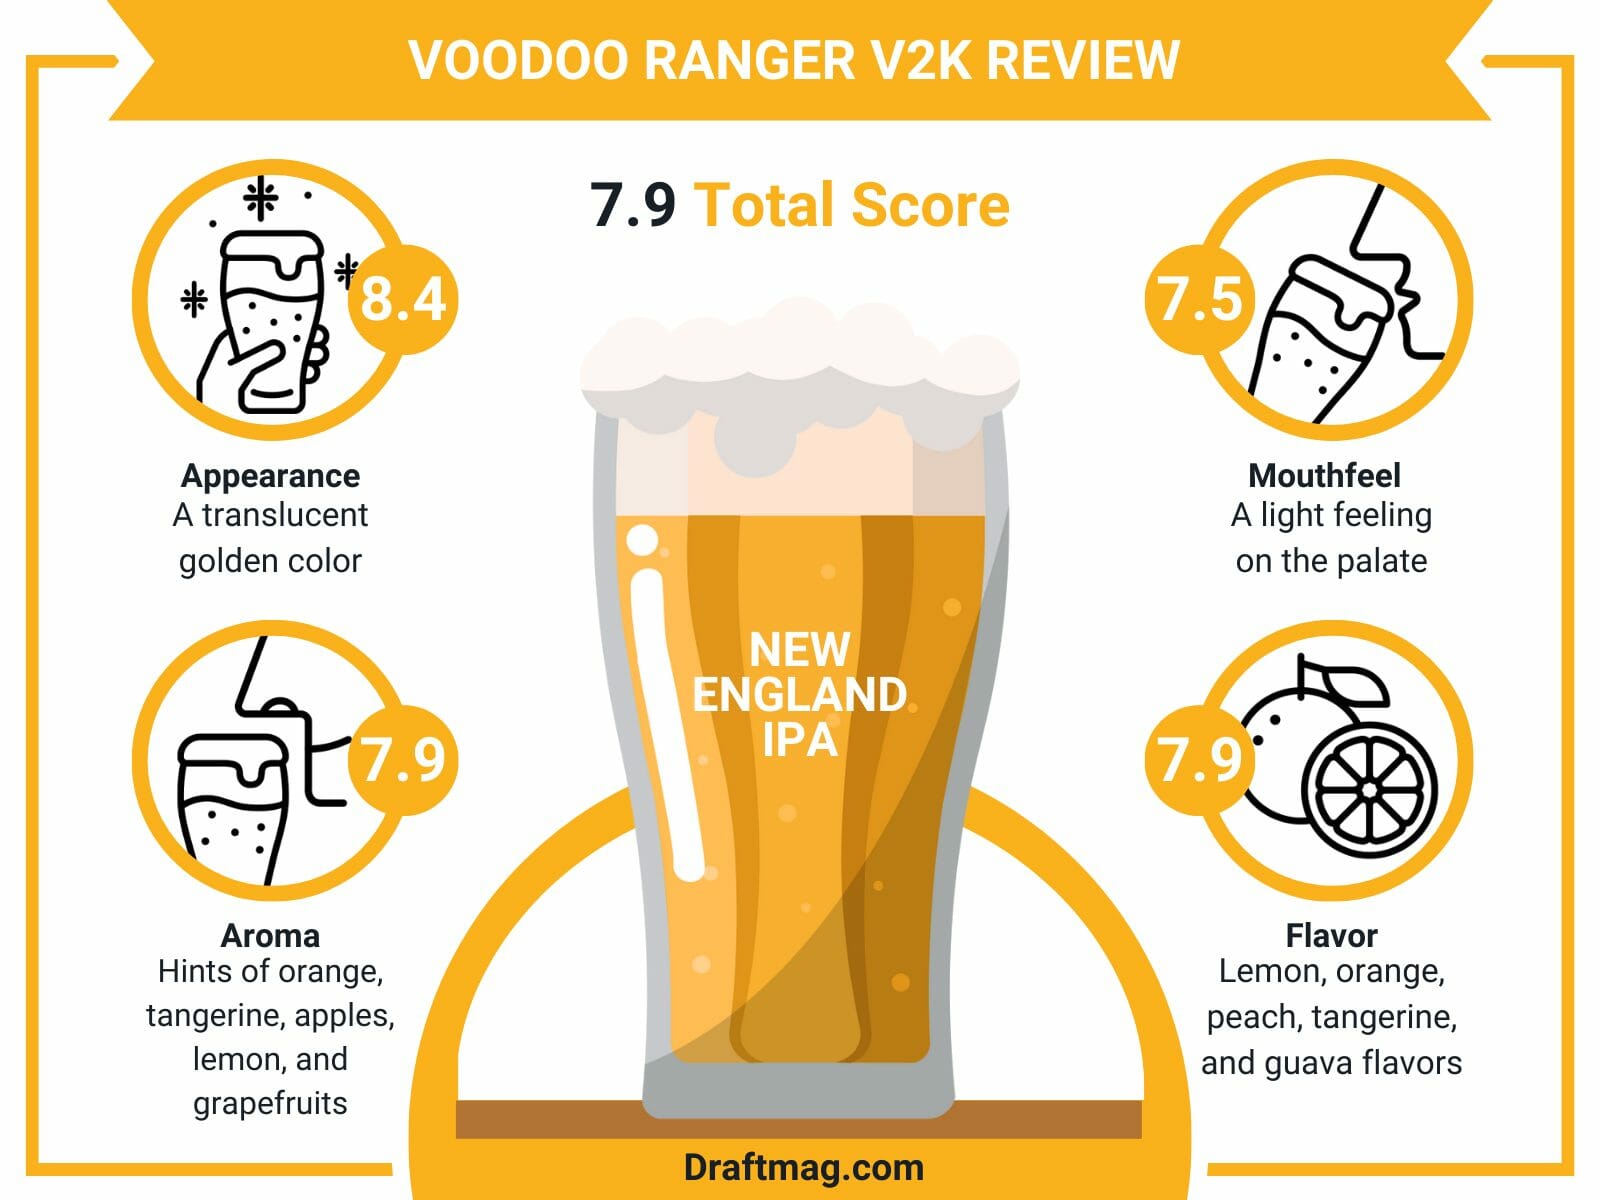 Voodoo Ranger v2K Review Infographic